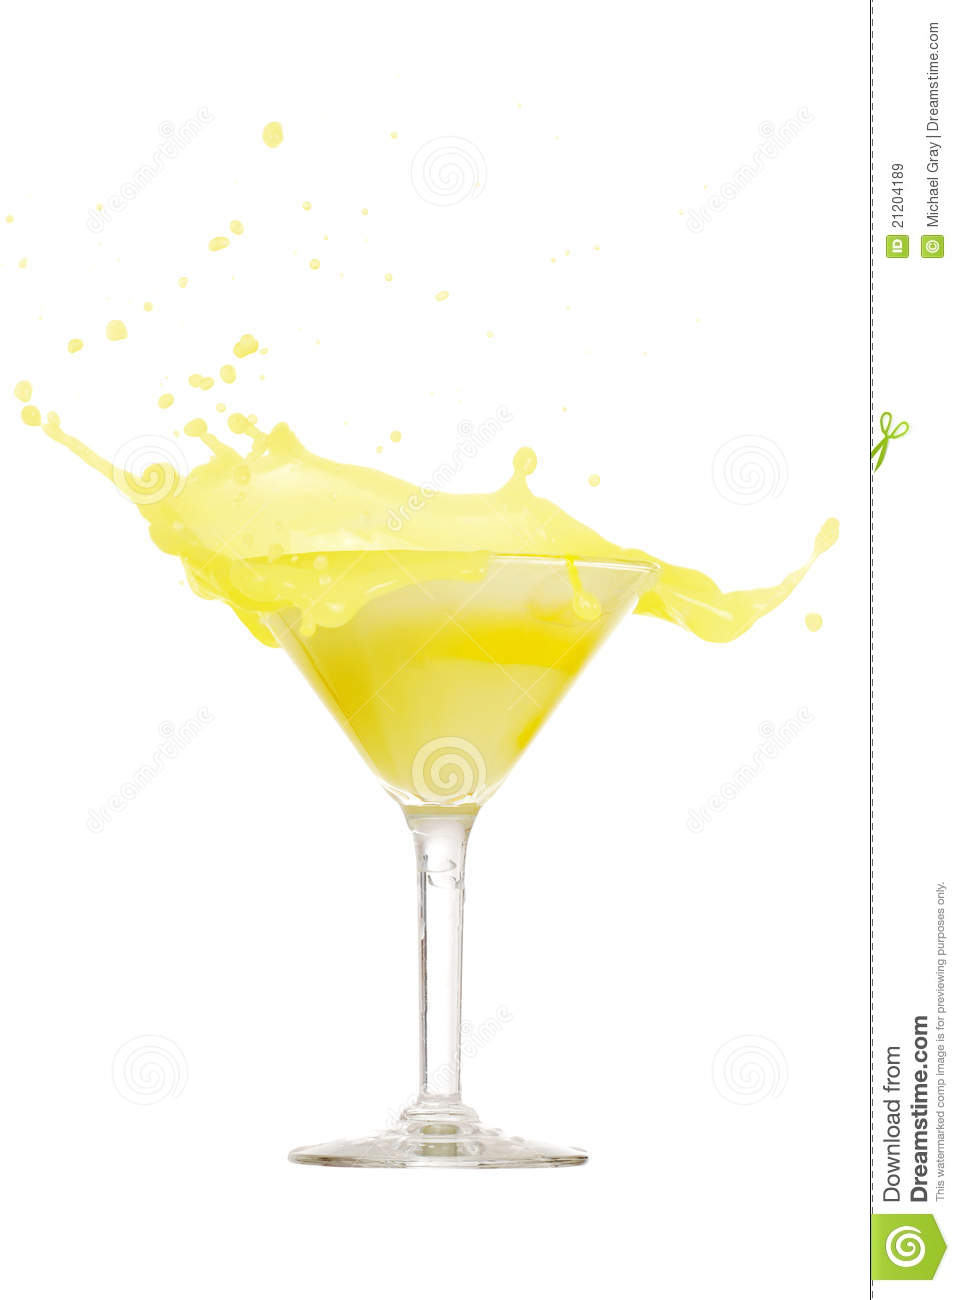 Lemon Martini Splash Royalty Free Stock Images   Image  21204189